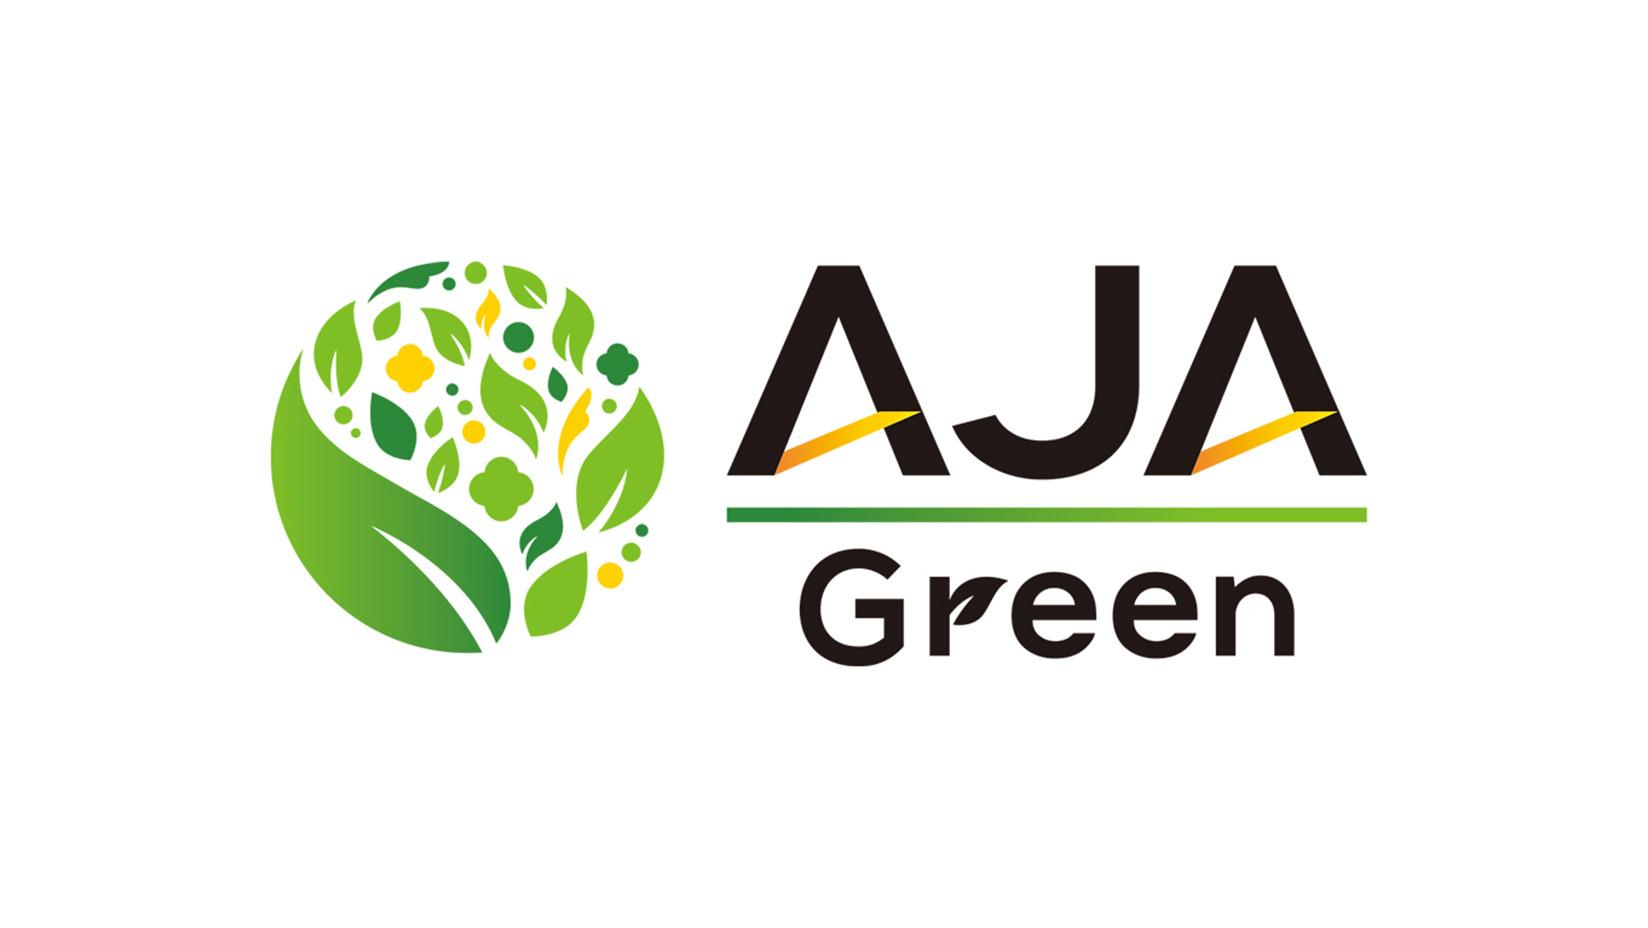 サイバーエージェント、広告クリエイティブ審査ソリューション「AJA GREEN」が単体サービスとして10月下旬より提供